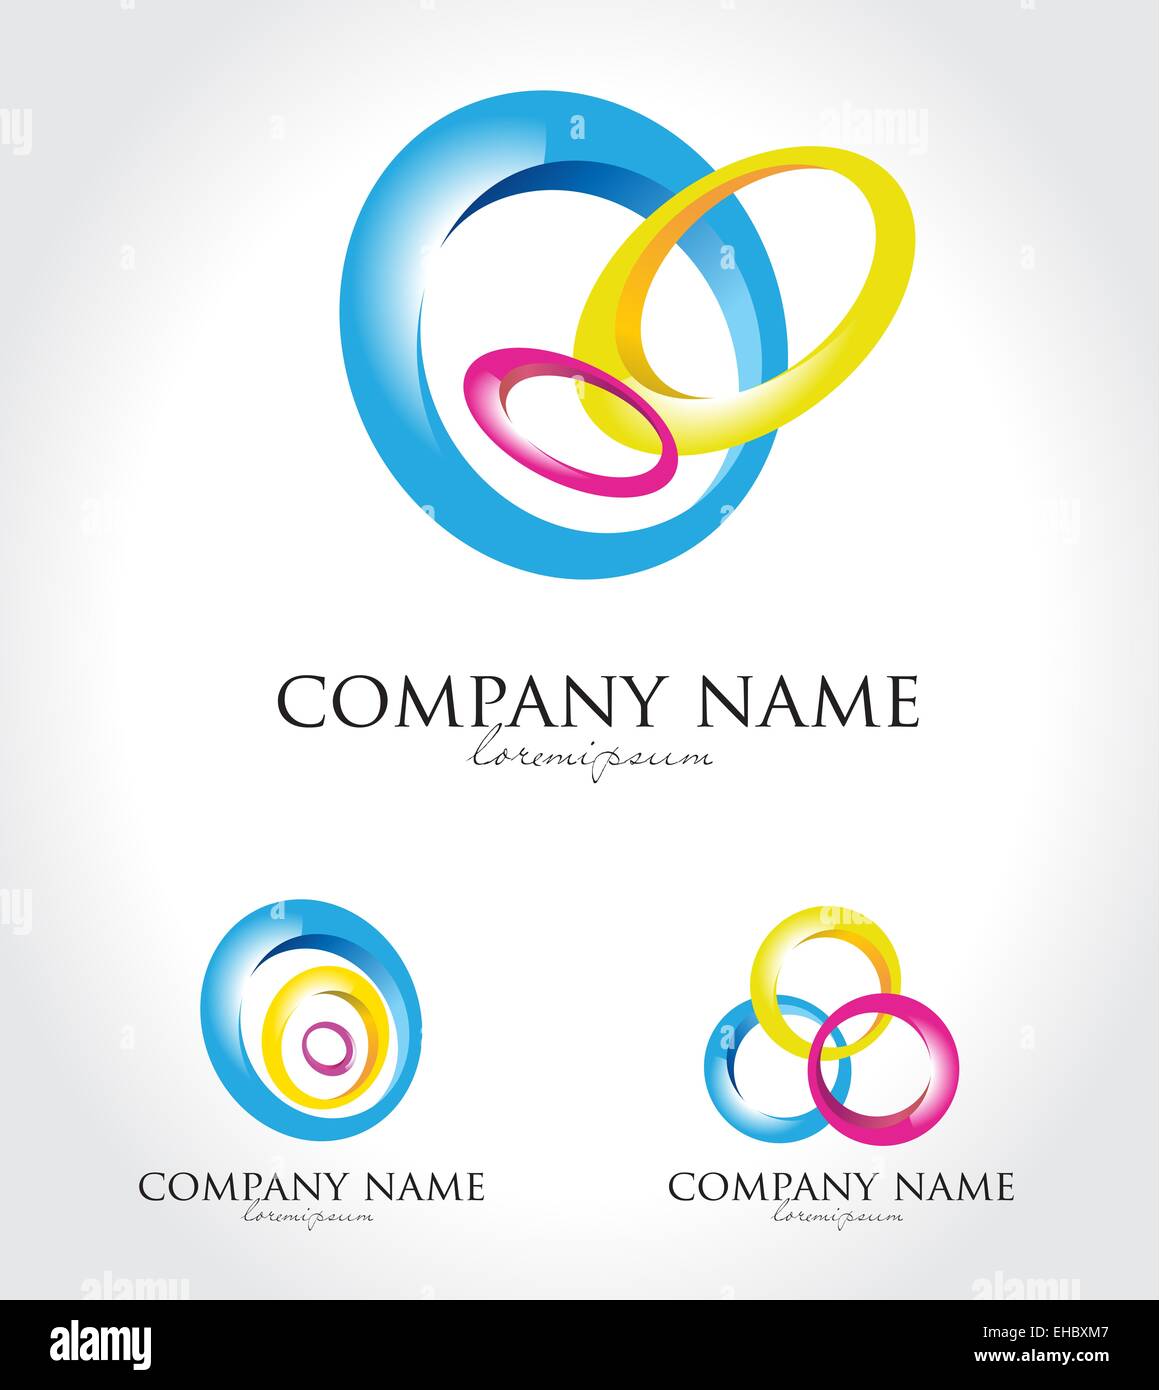 Les cercles colorés Logo. Résumé de création logos effectués avec des cercles Banque D'Images